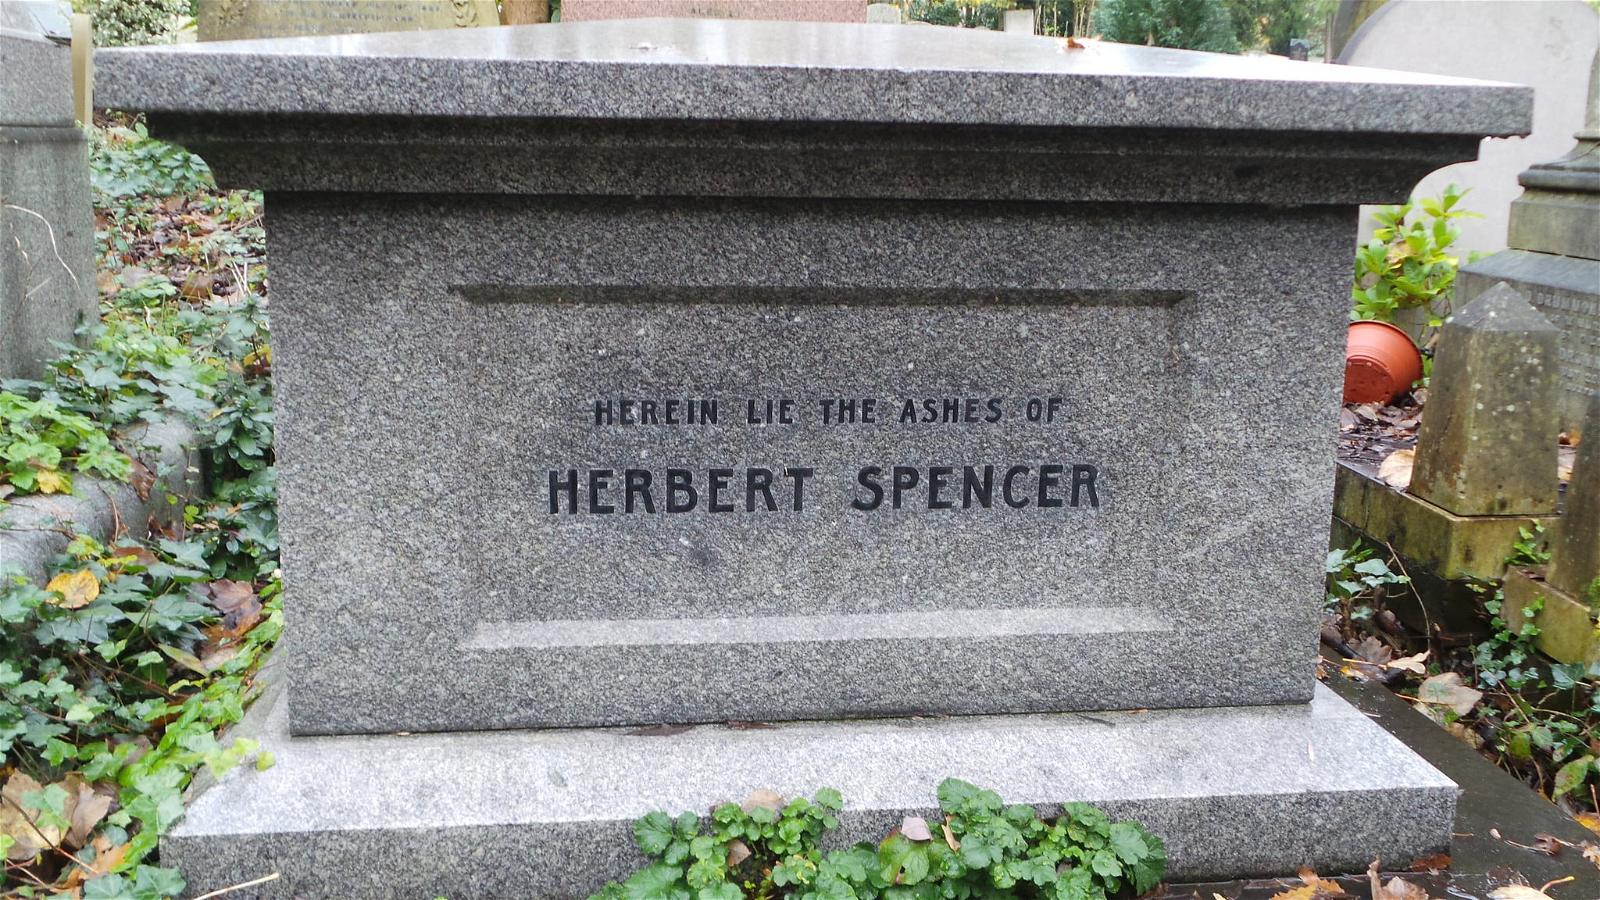 صورة Herbert Spencer. highgate london cemetery herbertspencer